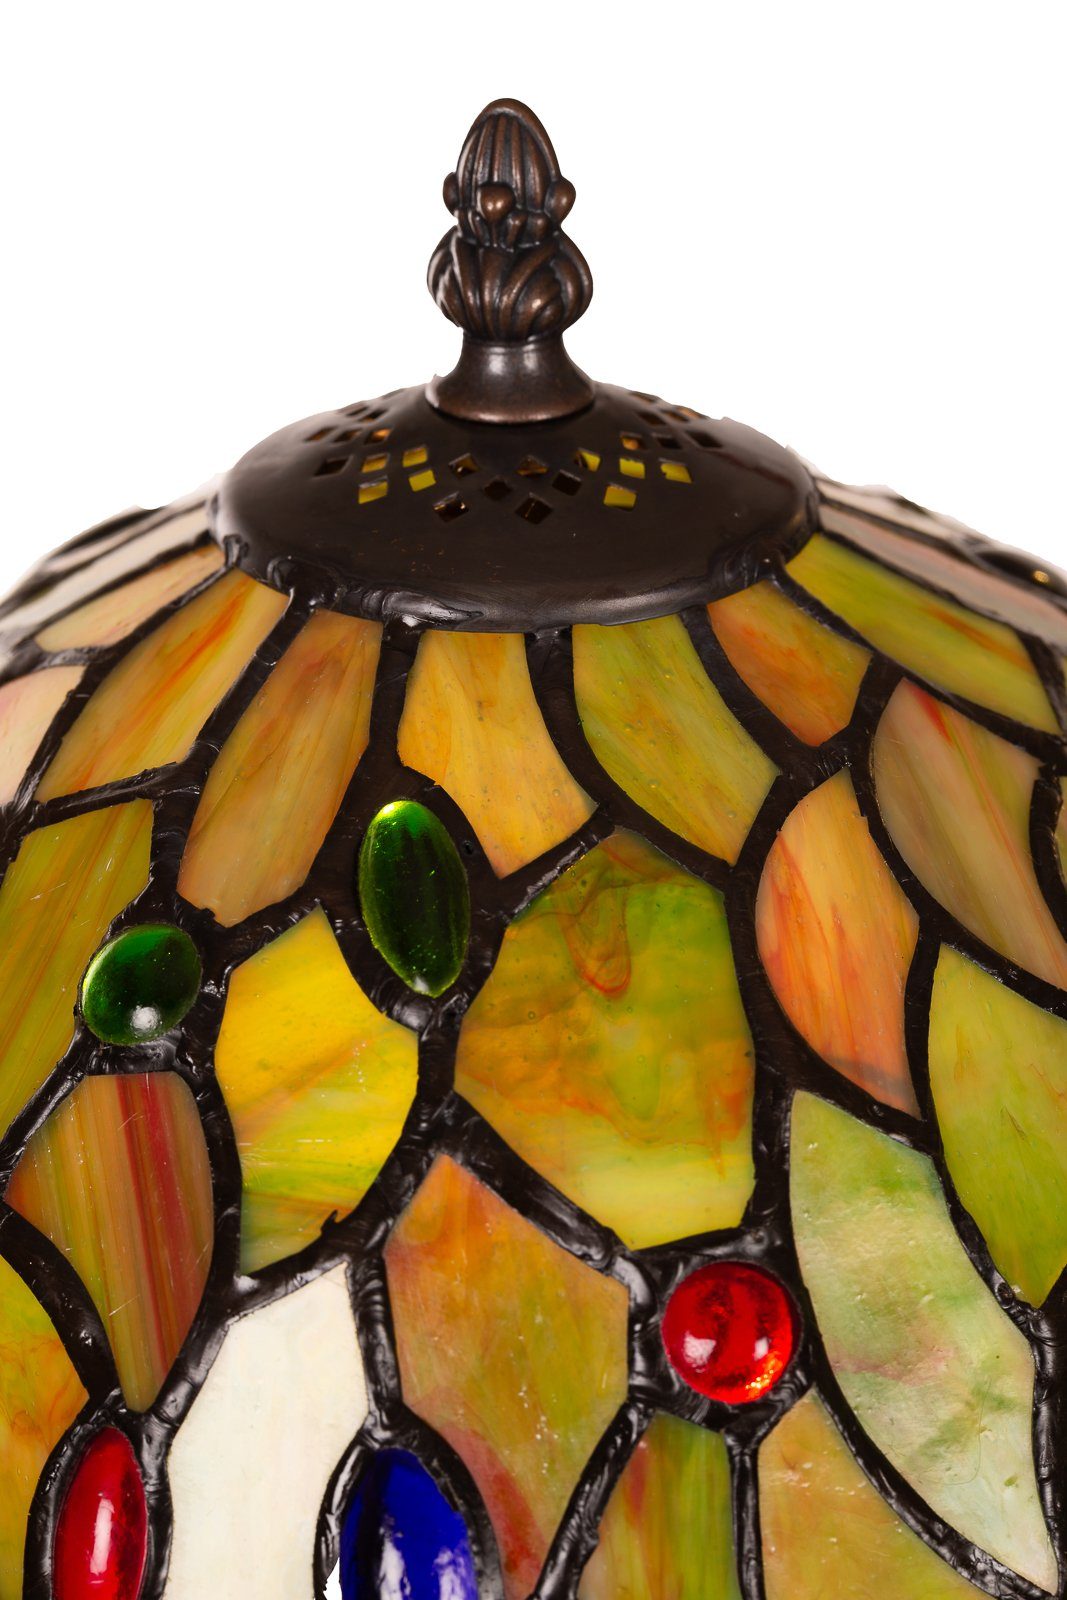 BIRENDY Motiv Steinchen Style Lampe Stehlampe Tiffany Dekorationslampe Tischlampe Ti147